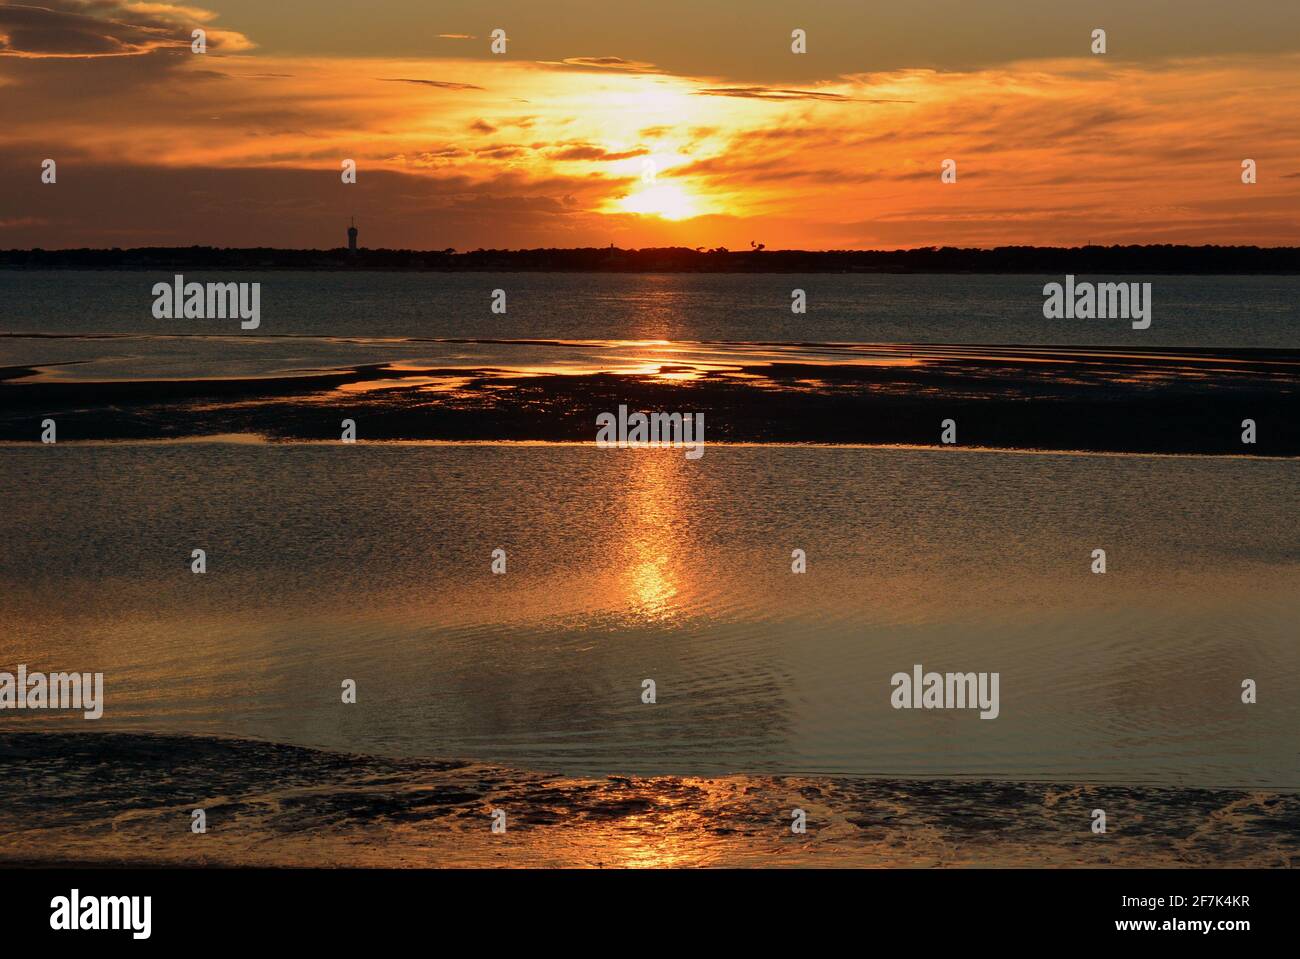 France, Aquitaine, bassin d'Arcachon, les magnifiques couleurs du coucher de soleil dans le bassin d'Arcachon vu de la plage. Banque D'Images